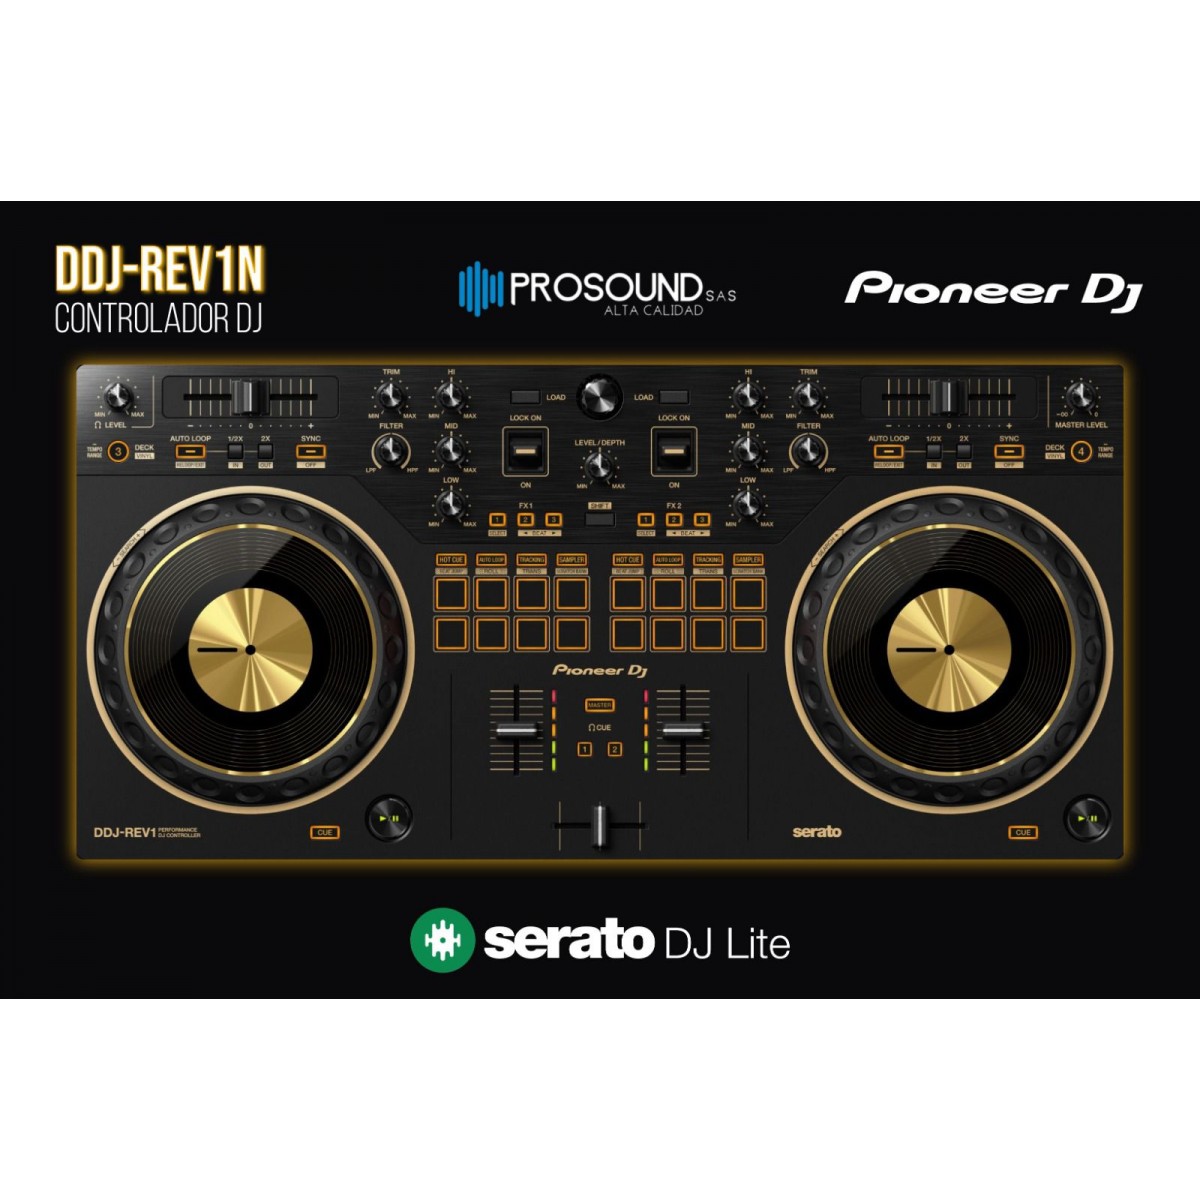 CONTROLADOR PIONEER DJ DDJ-REV1-N (Edición Limitada Dorada)